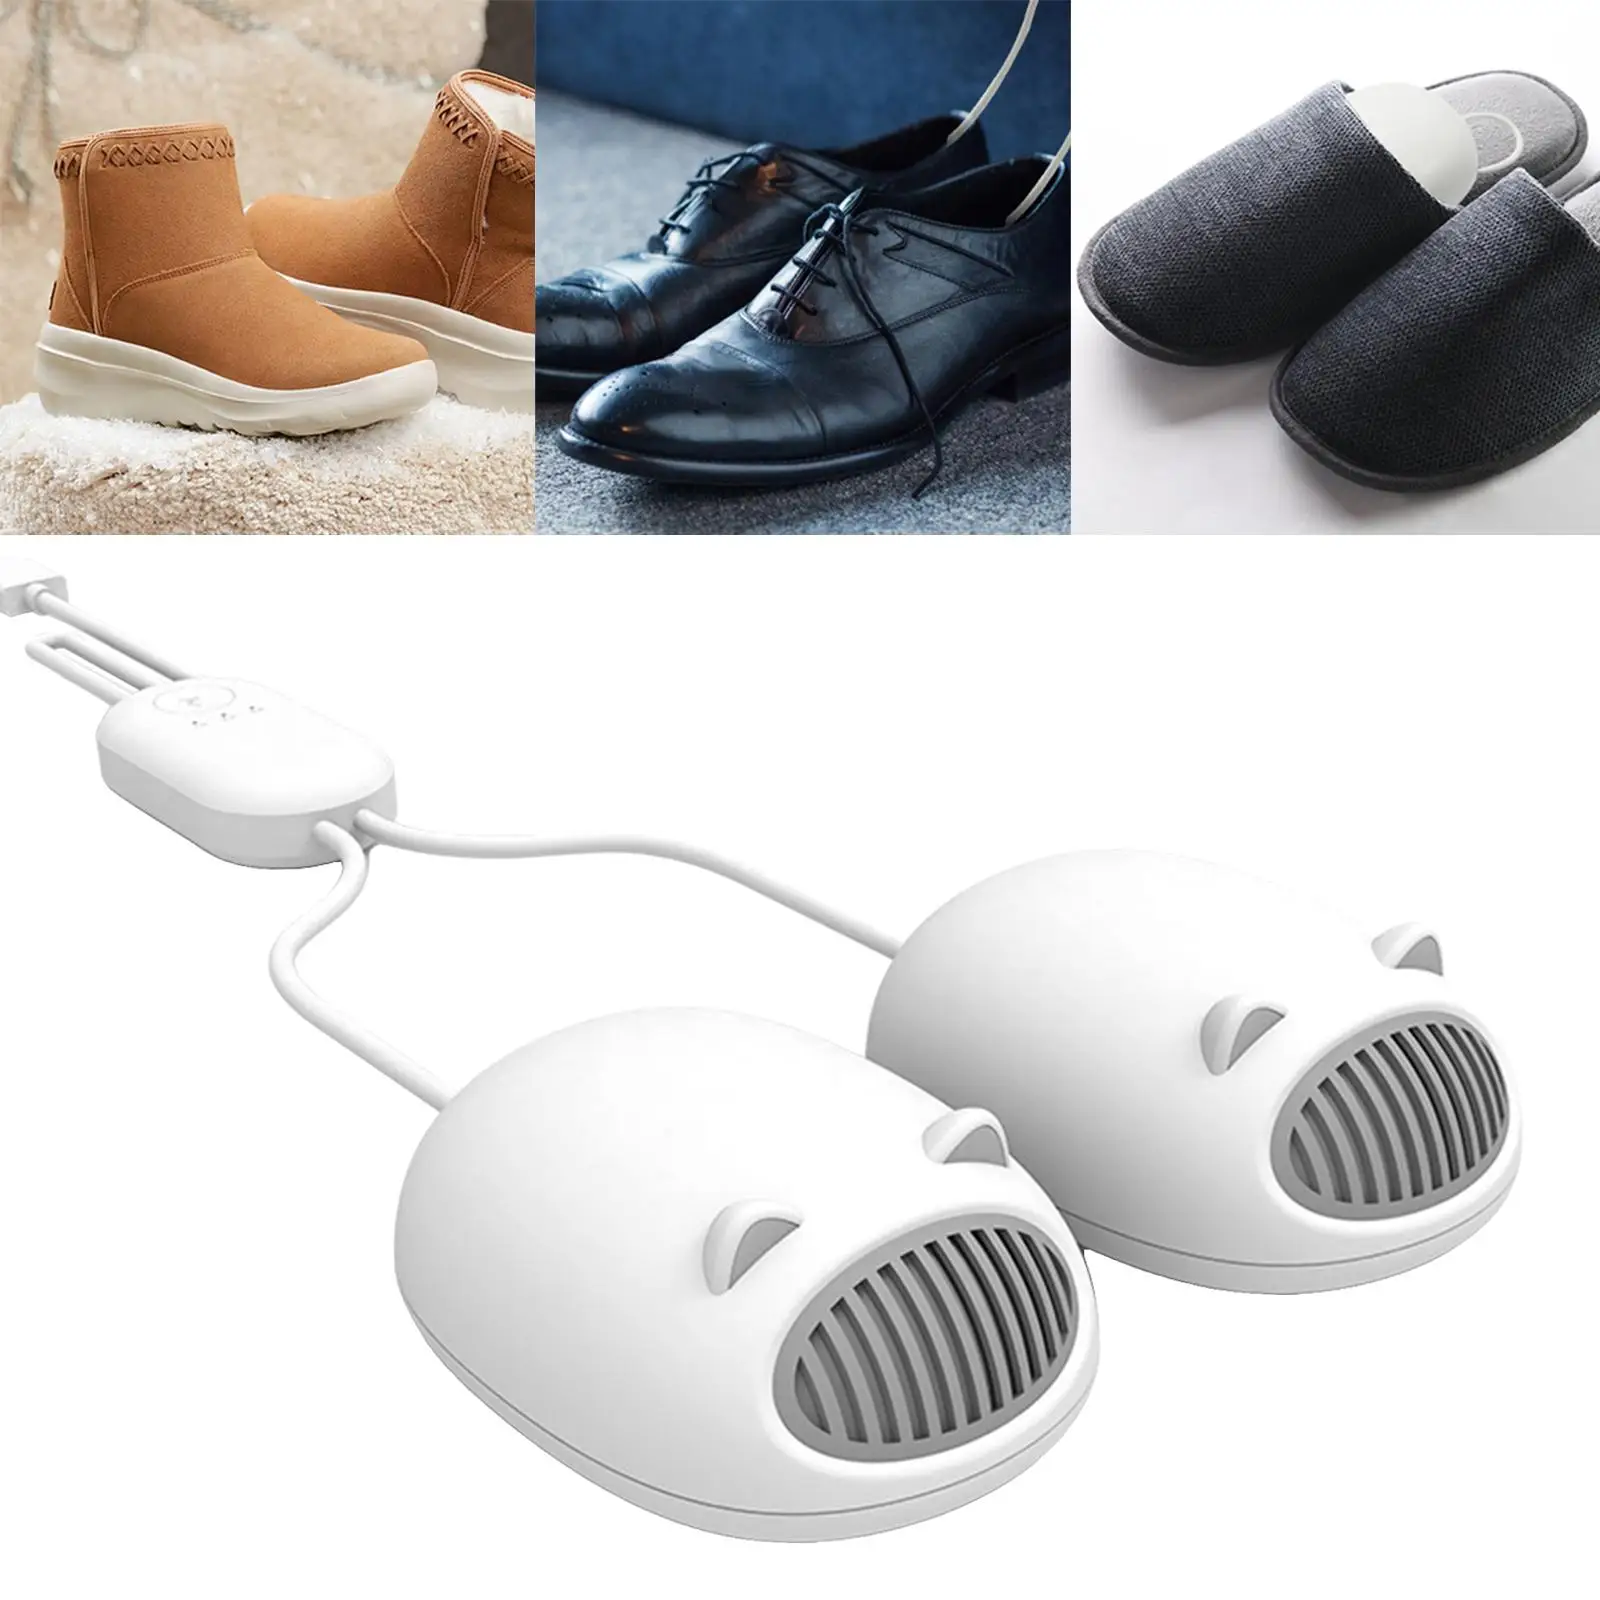 boot Shoe Dryer Length Adjustable Eliminate Bad Odor Fast Dryer Hats Shoes